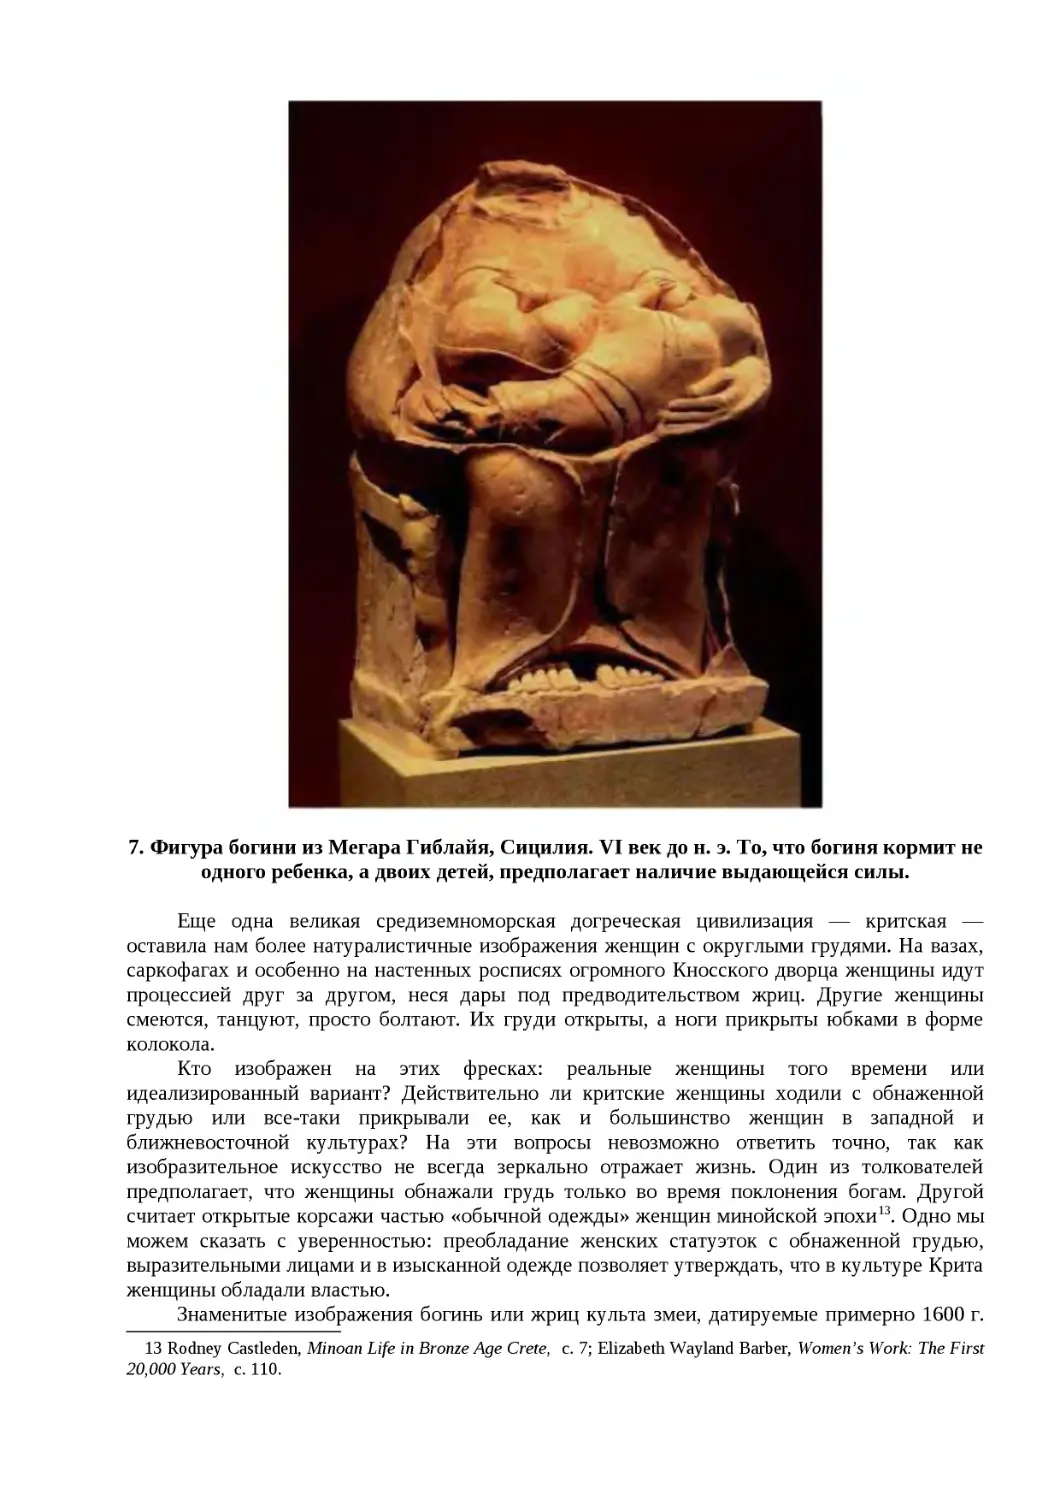 "
﻿7. Фигура богини из Мегара Гиблайя, Сицилия. VI век до н. э. То, что богиня кормит не одного ребенка, а двоих детей, предполагает наличие выдающейся силы